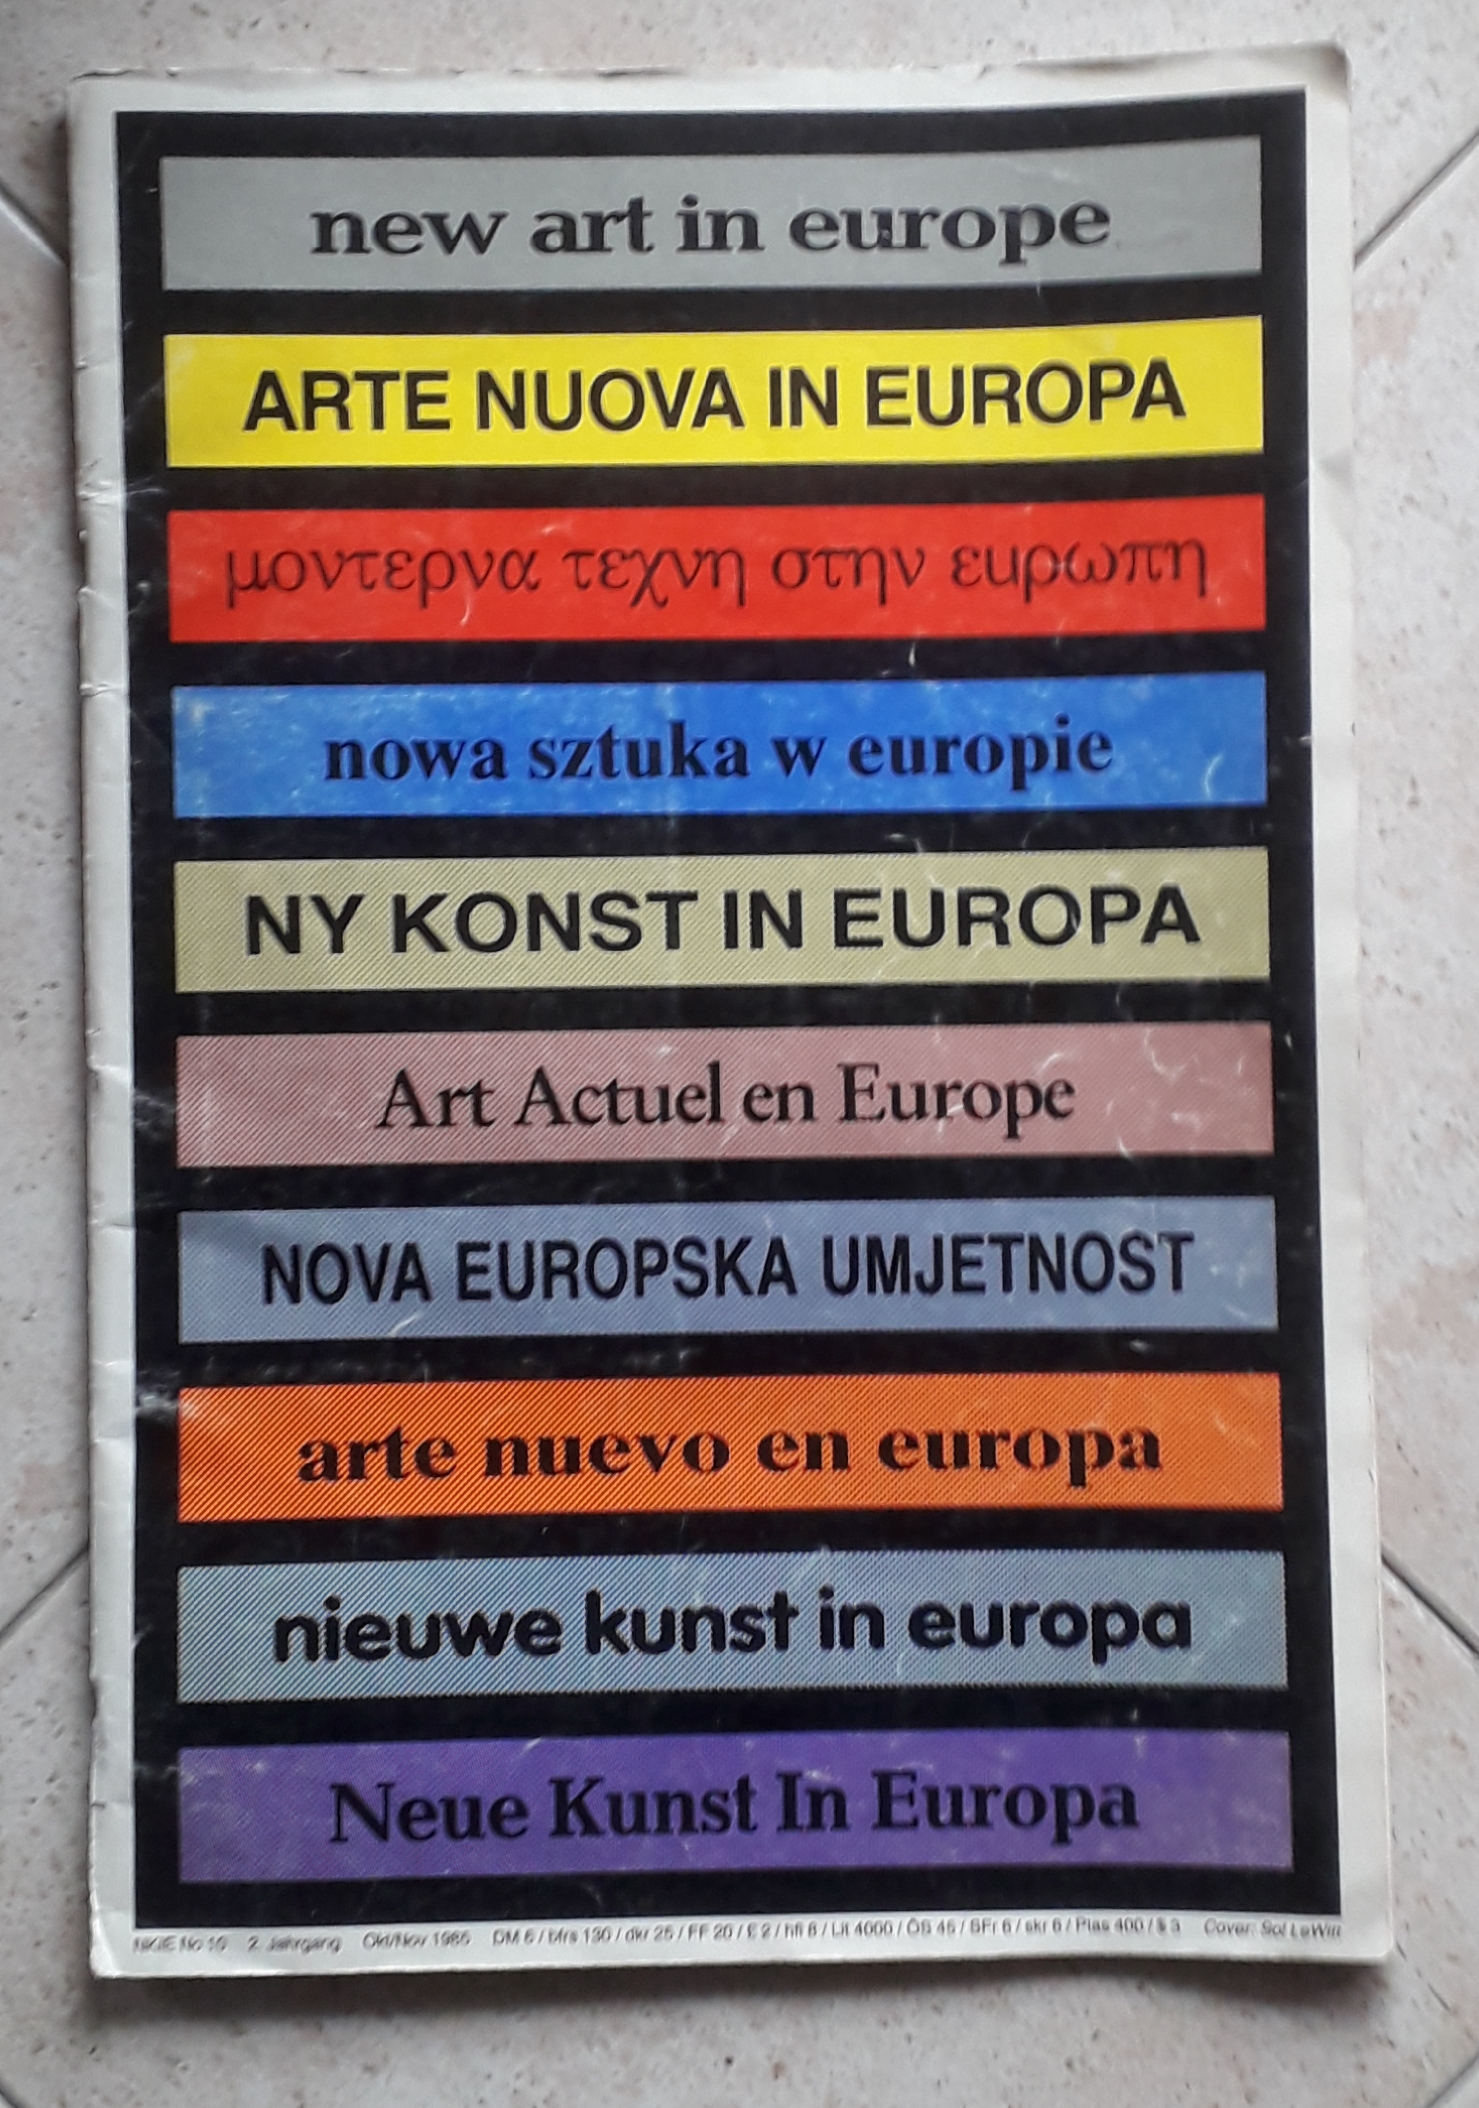 Neue kunst in europa - new art in europe - …